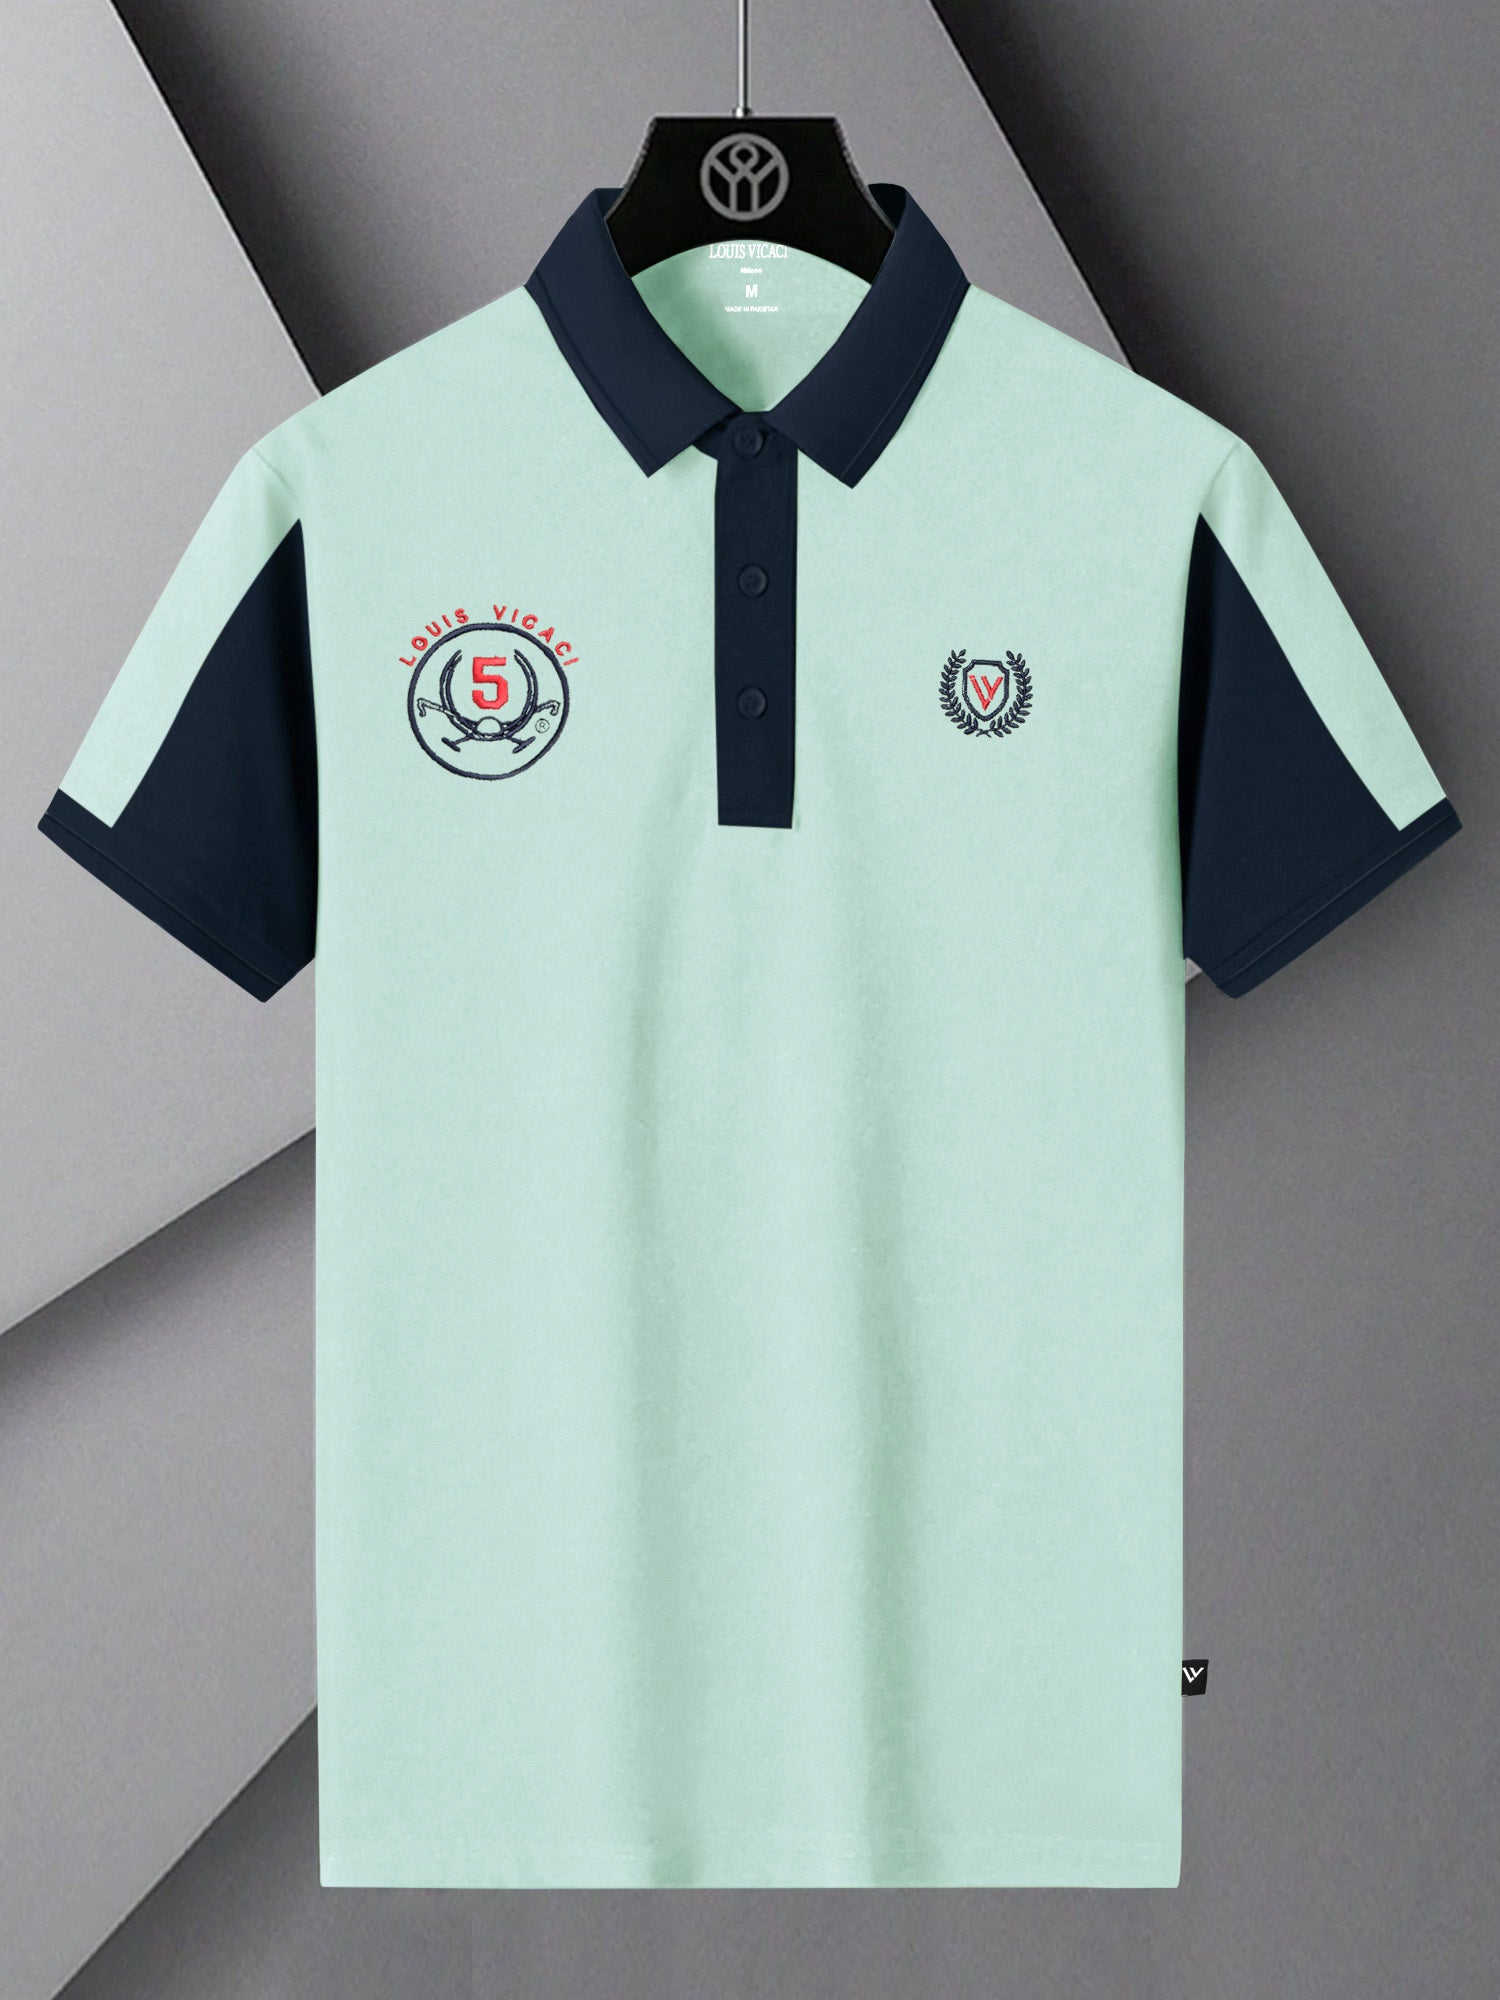 LV Summer Polo Shirt For Men-Mont Green & Dark Navy-SP1541